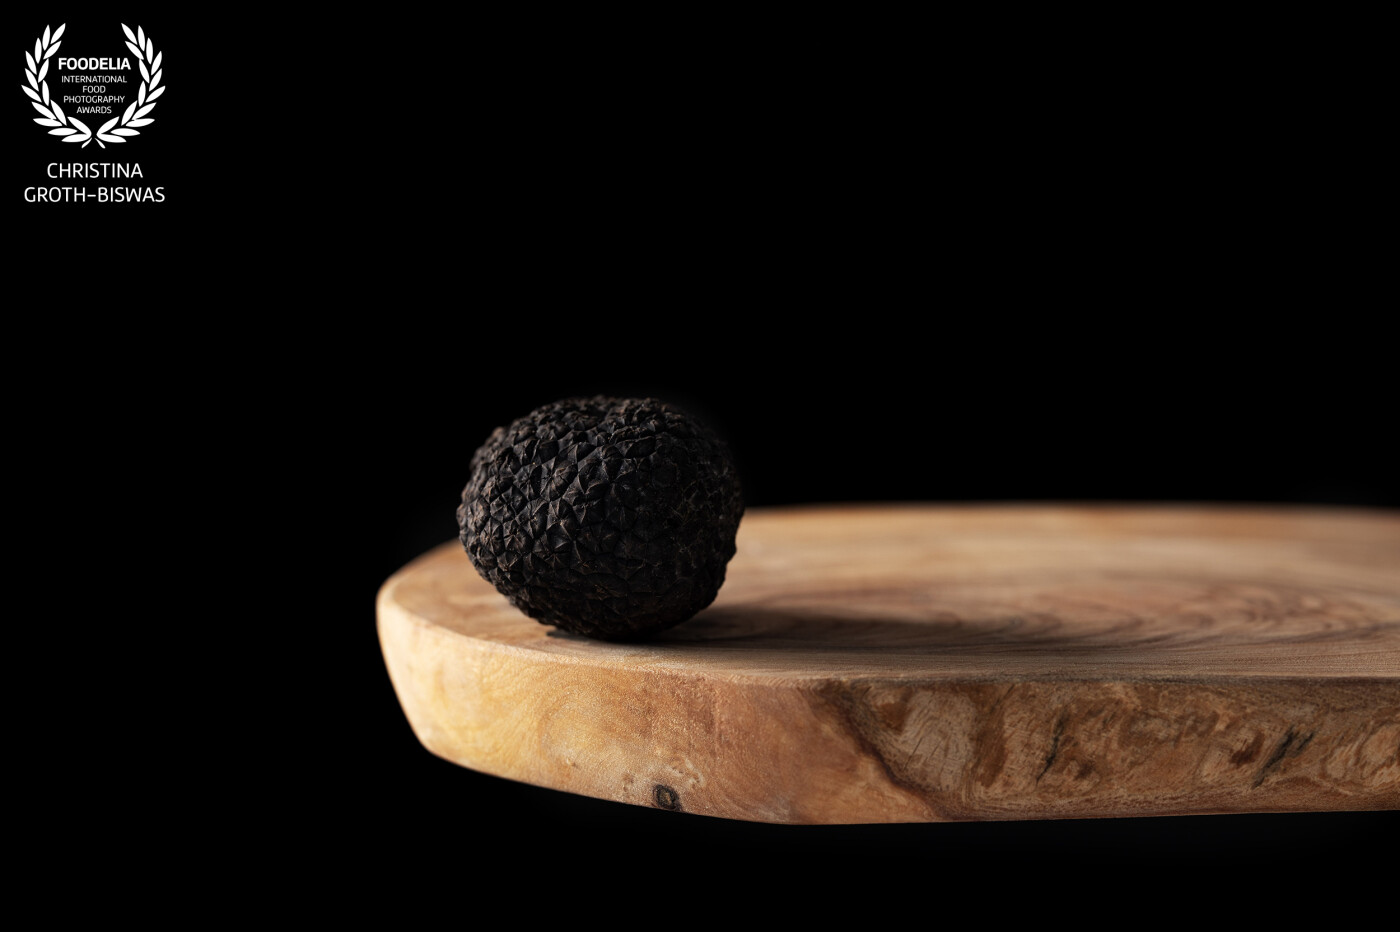 Portrait of a winter truffle.